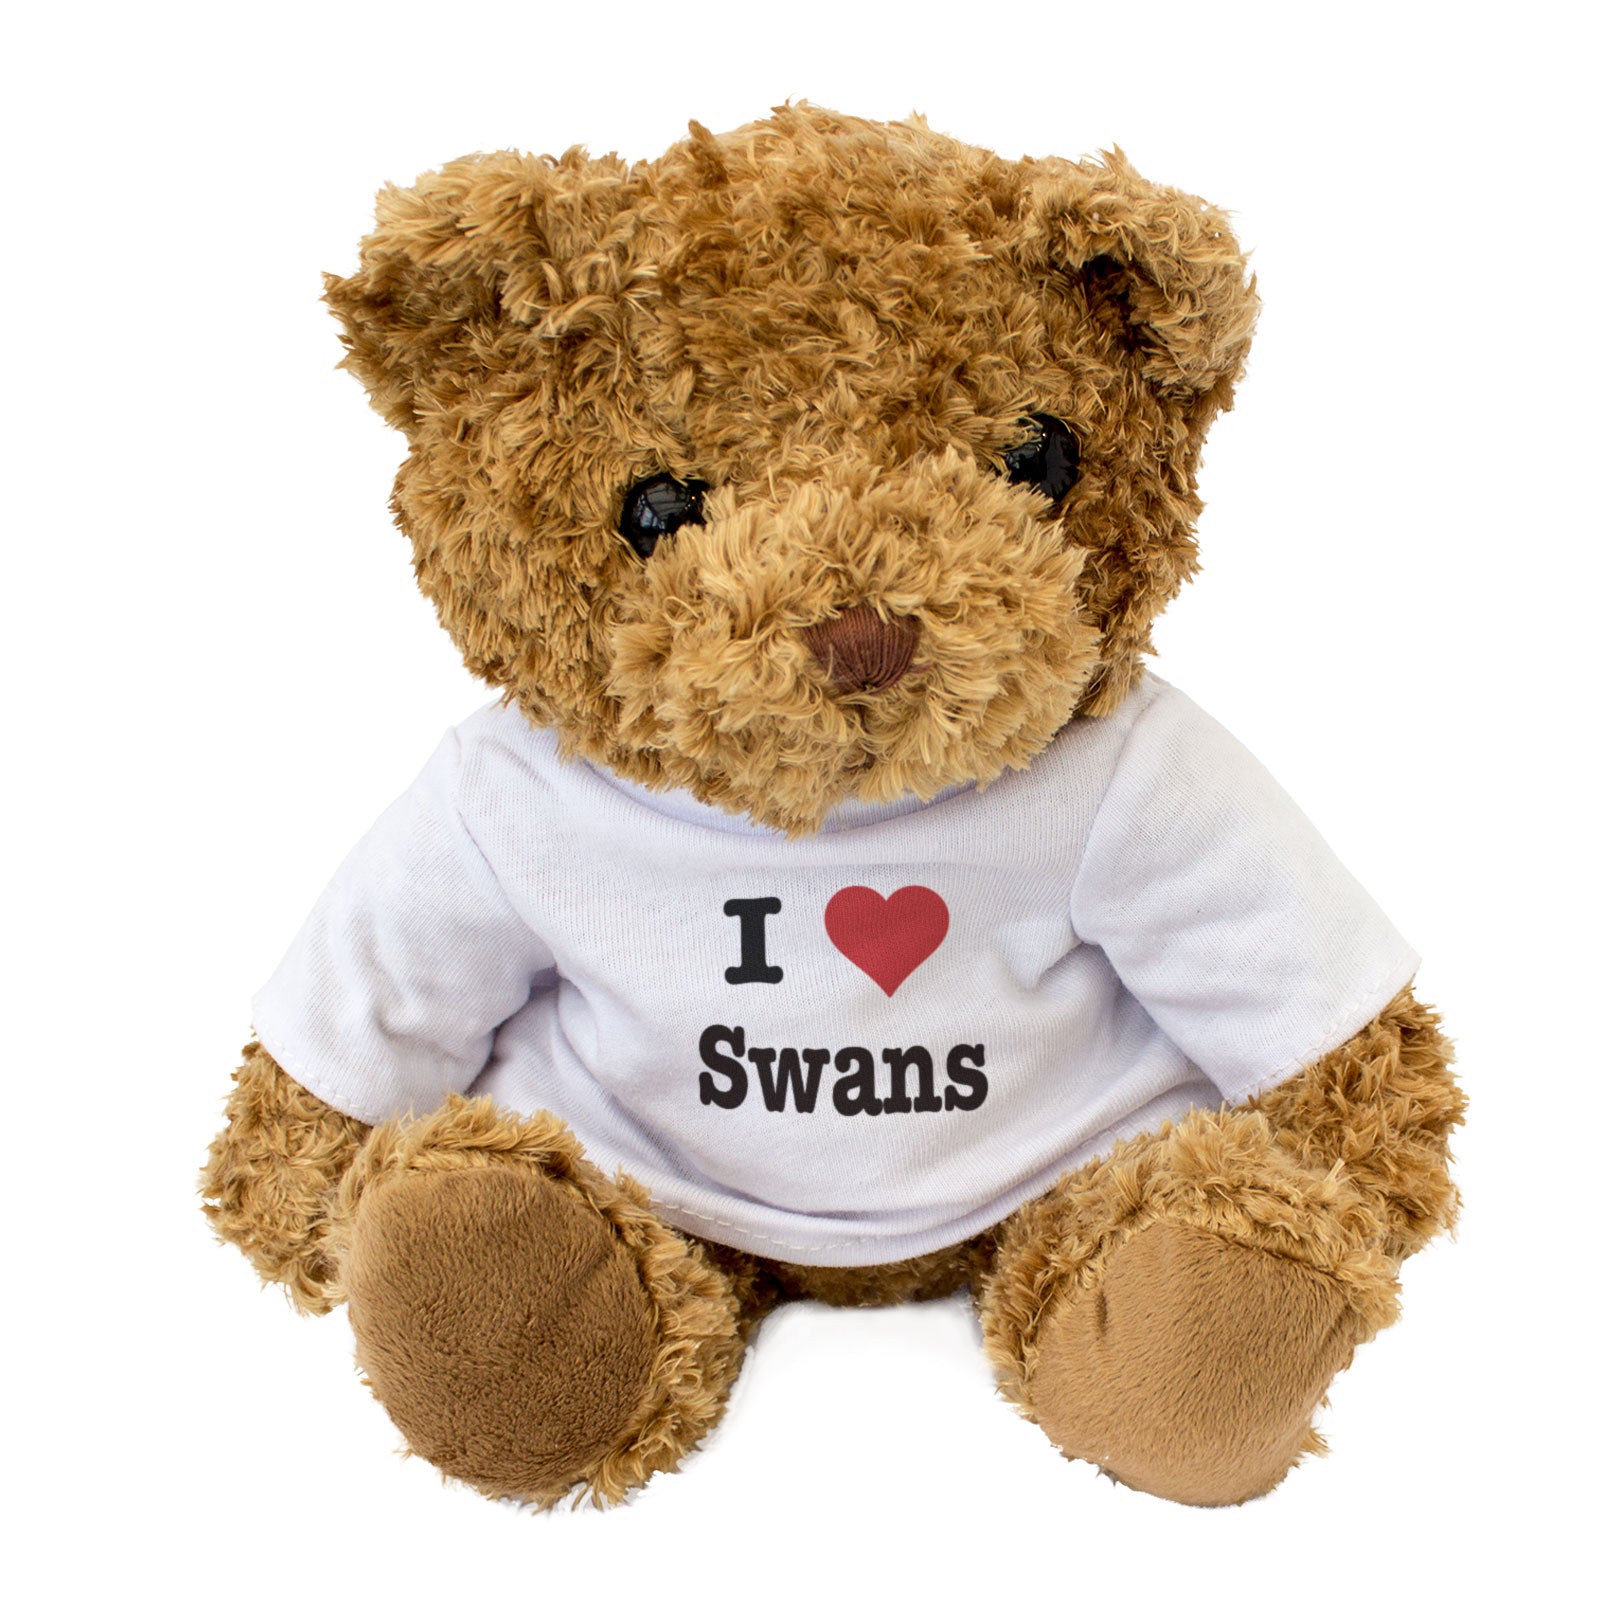 I Love Swans - Teddy Bear